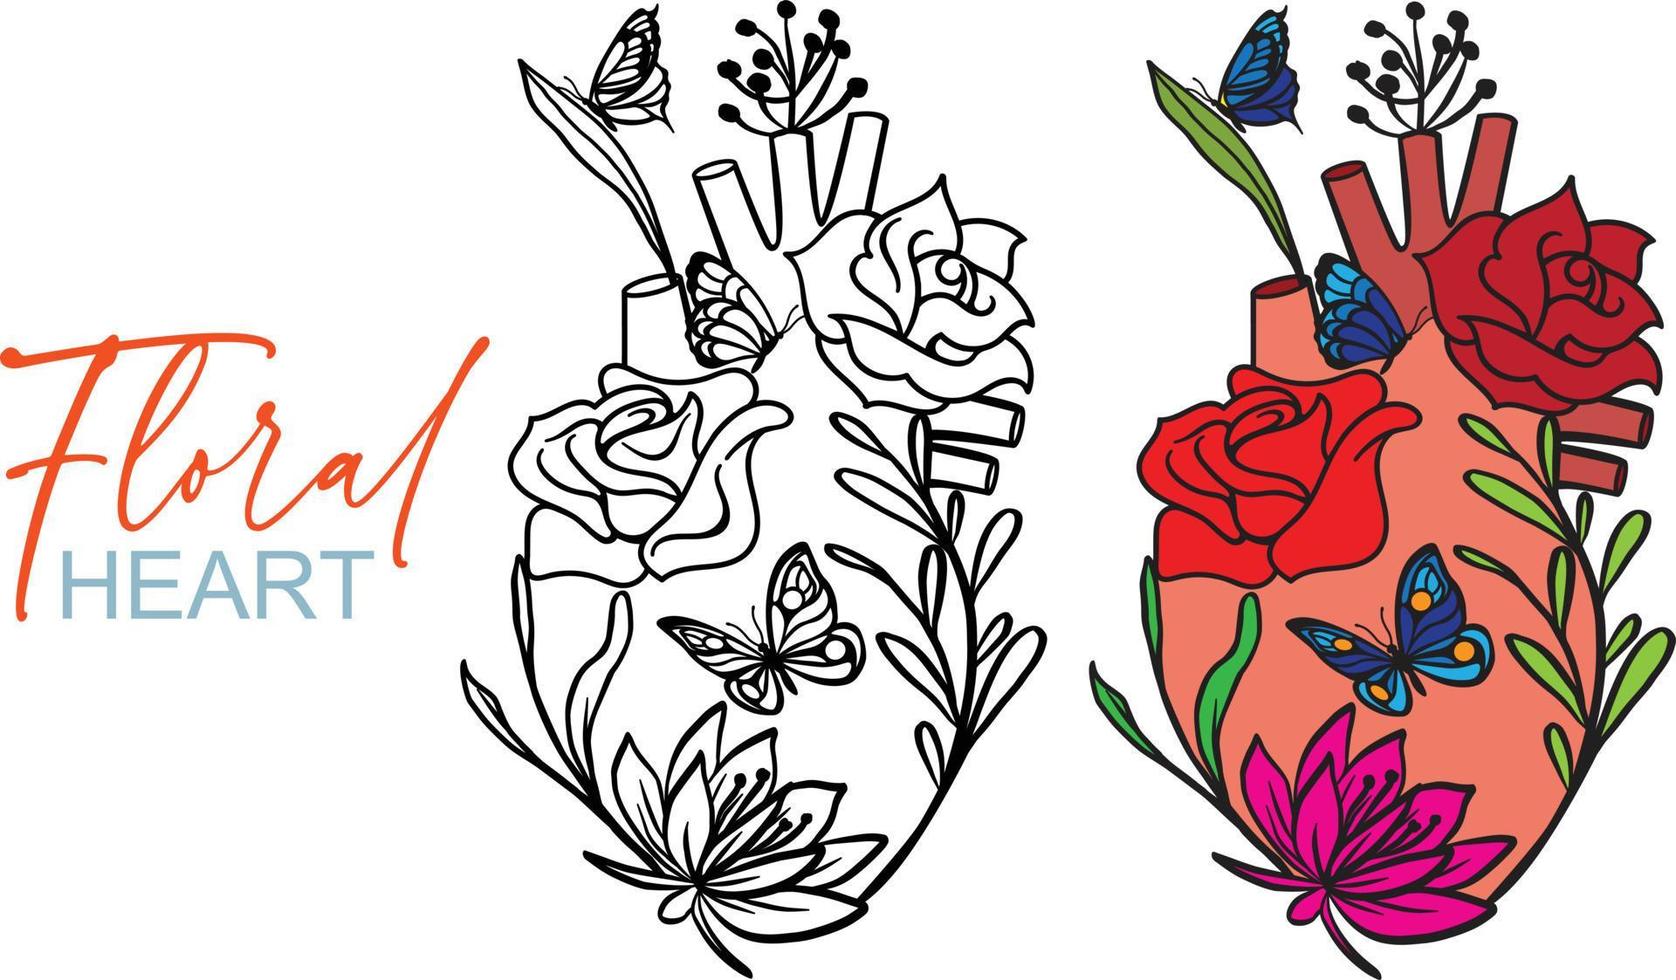 bloemen anatomisch hart. silhouet en kleuren stijl Aan wit achtergrond. vector illustratie